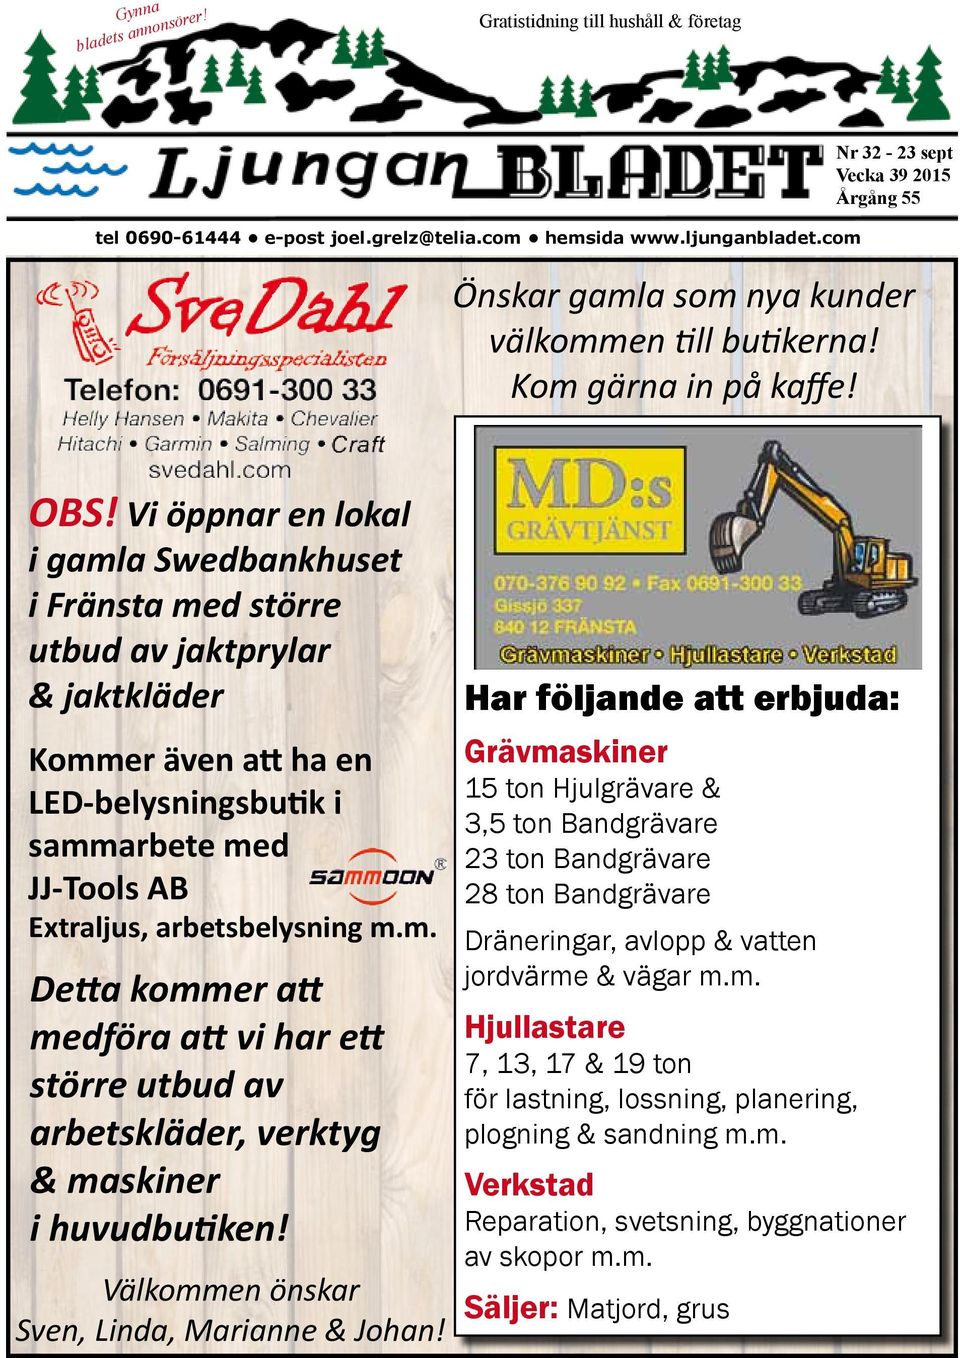 Vi öppnar en lokal i gamla Swedbankhuset i Fränsta med större utbud av jaktprylar & jaktkläder Kommer även att ha en LED-belysningsbutik i sammarbete med JJ-Tools AB Extraljus, arbetsbelysning m.m. Detta kommer att medföra att vi har ett större utbud av arbetskläder, verktyg & maskiner i huvudbutiken!